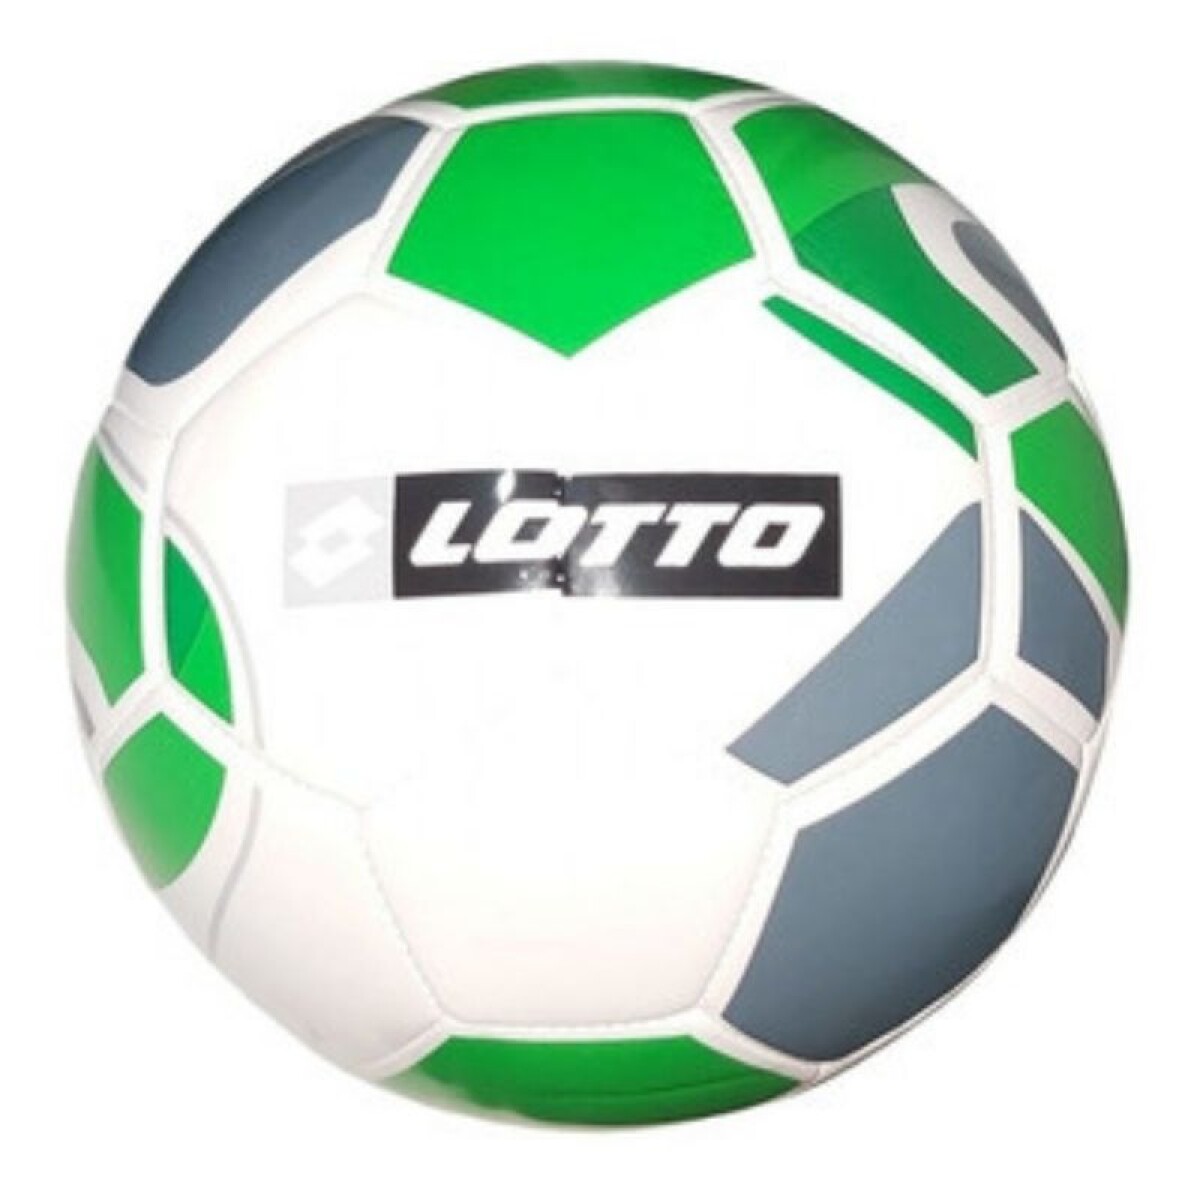 Pelota Lotto Futbol Nº4 Ciao Blanco/Verde - Color Único 